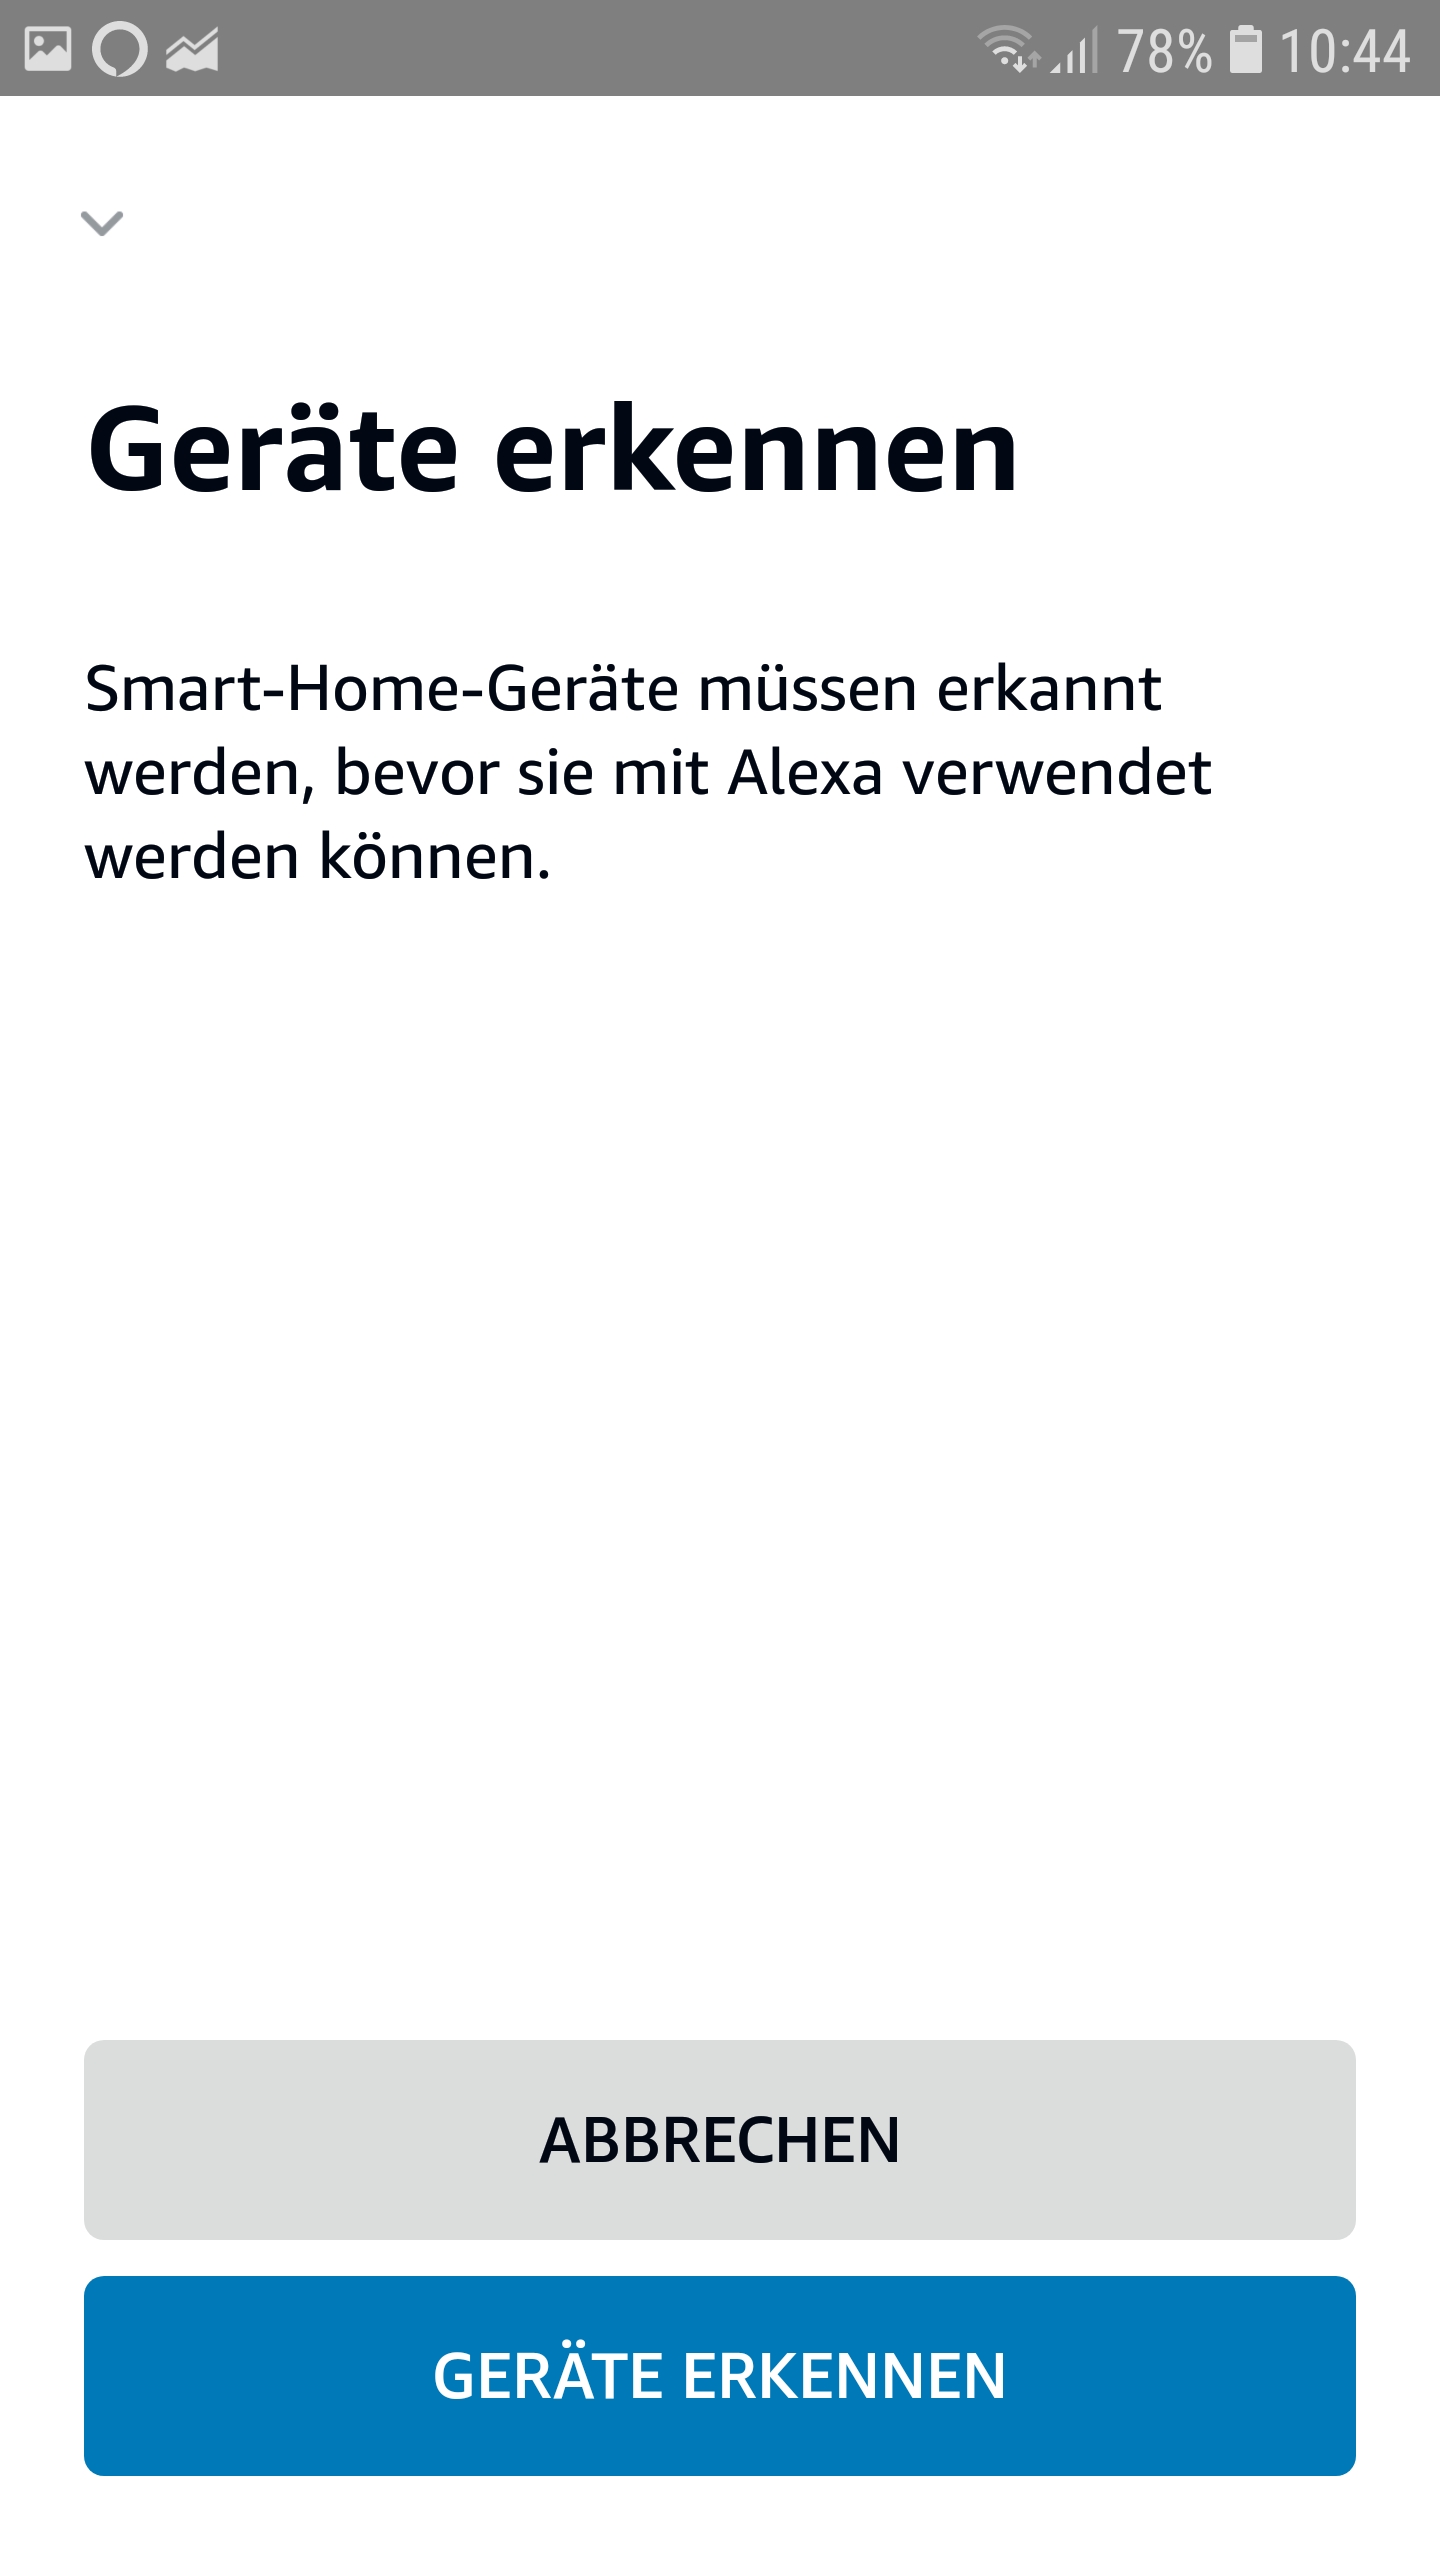 Geräte erkennen in der Alexa App